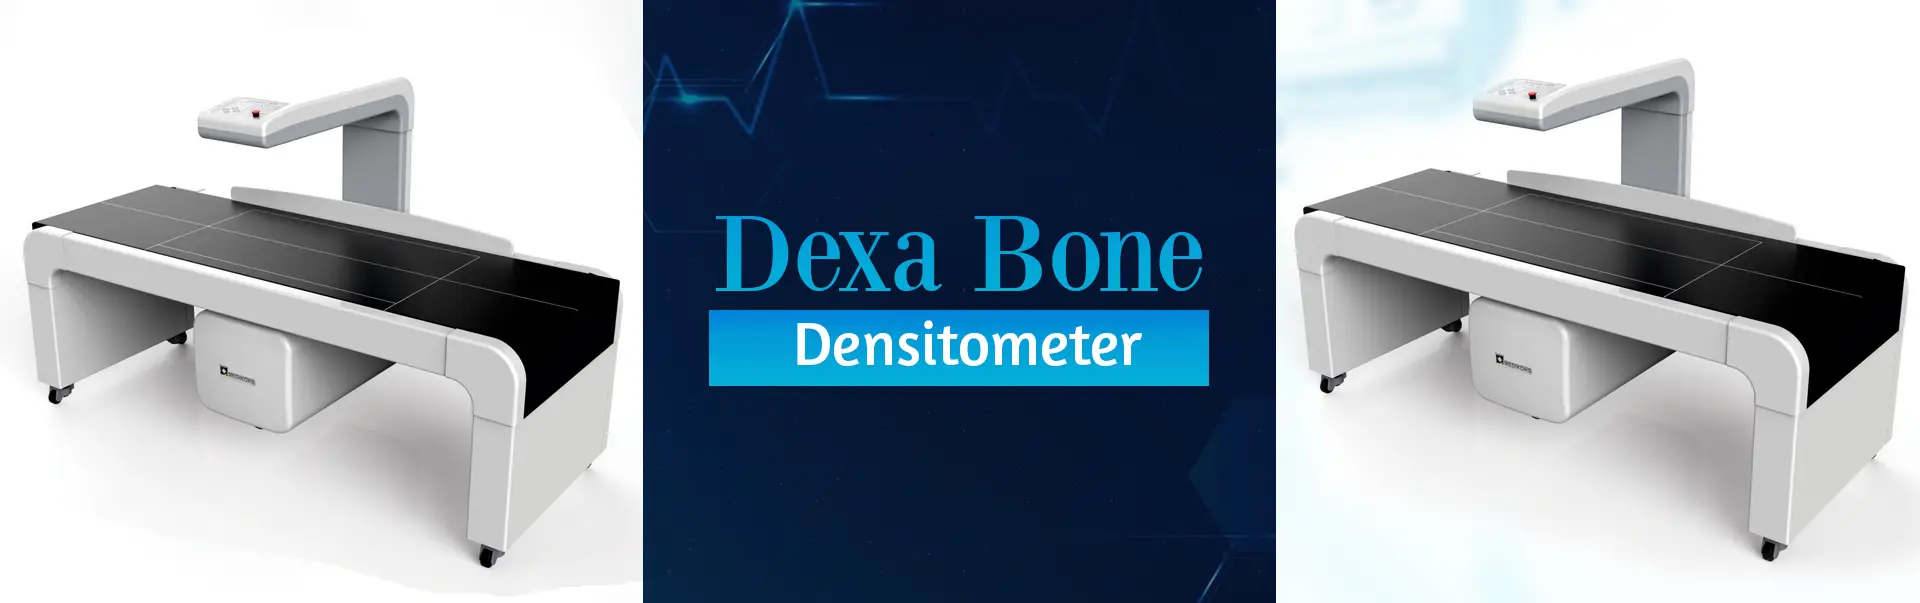 Dexa Bone Densitometer Manufacturers in Bareilly